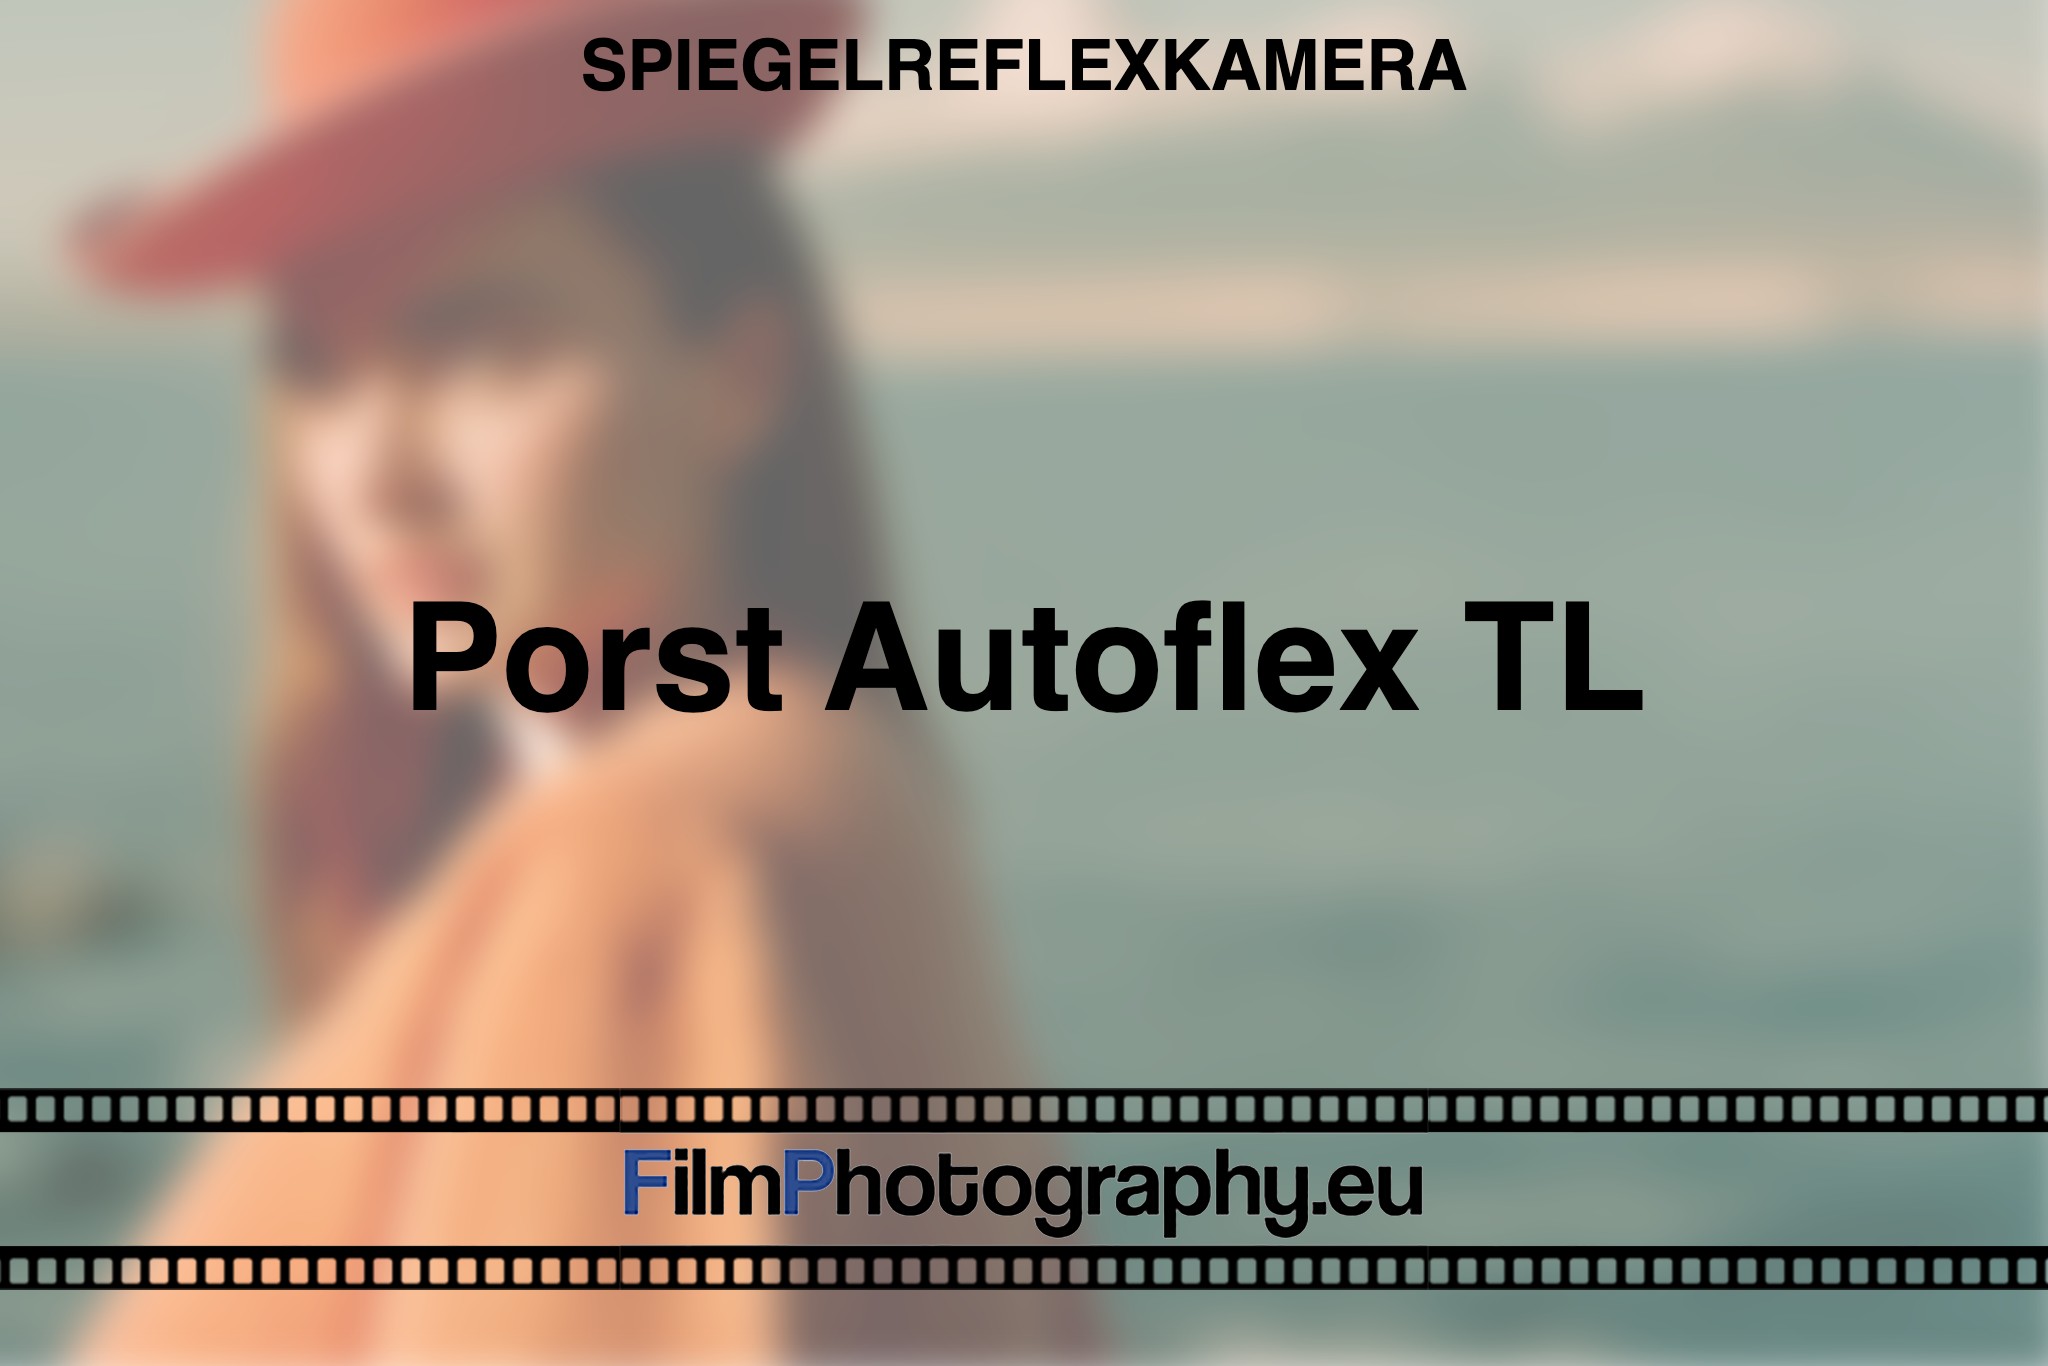 porst-autoflex-tl-spiegelreflexkamera-bnv